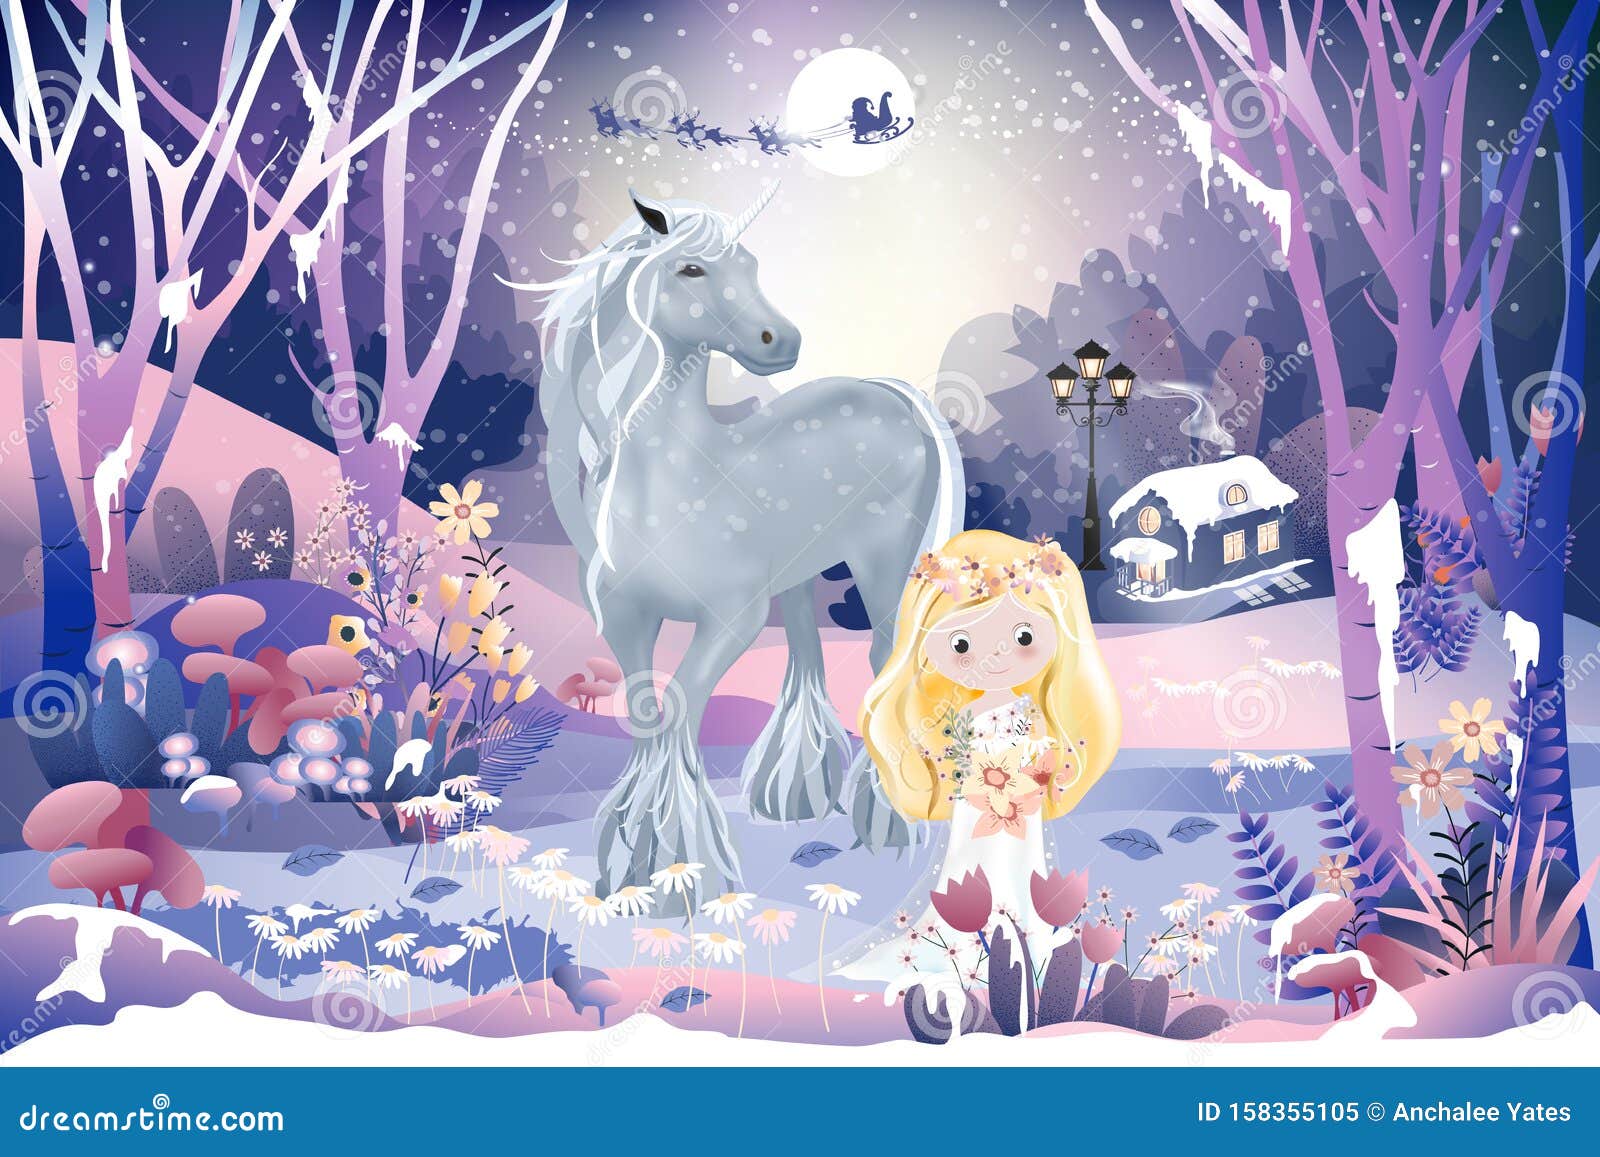 幻想的魔法森林风景 童话小屋 小公主 角兽和圣诞老人雪橇驯鹿飞过向量例证 插画包括有